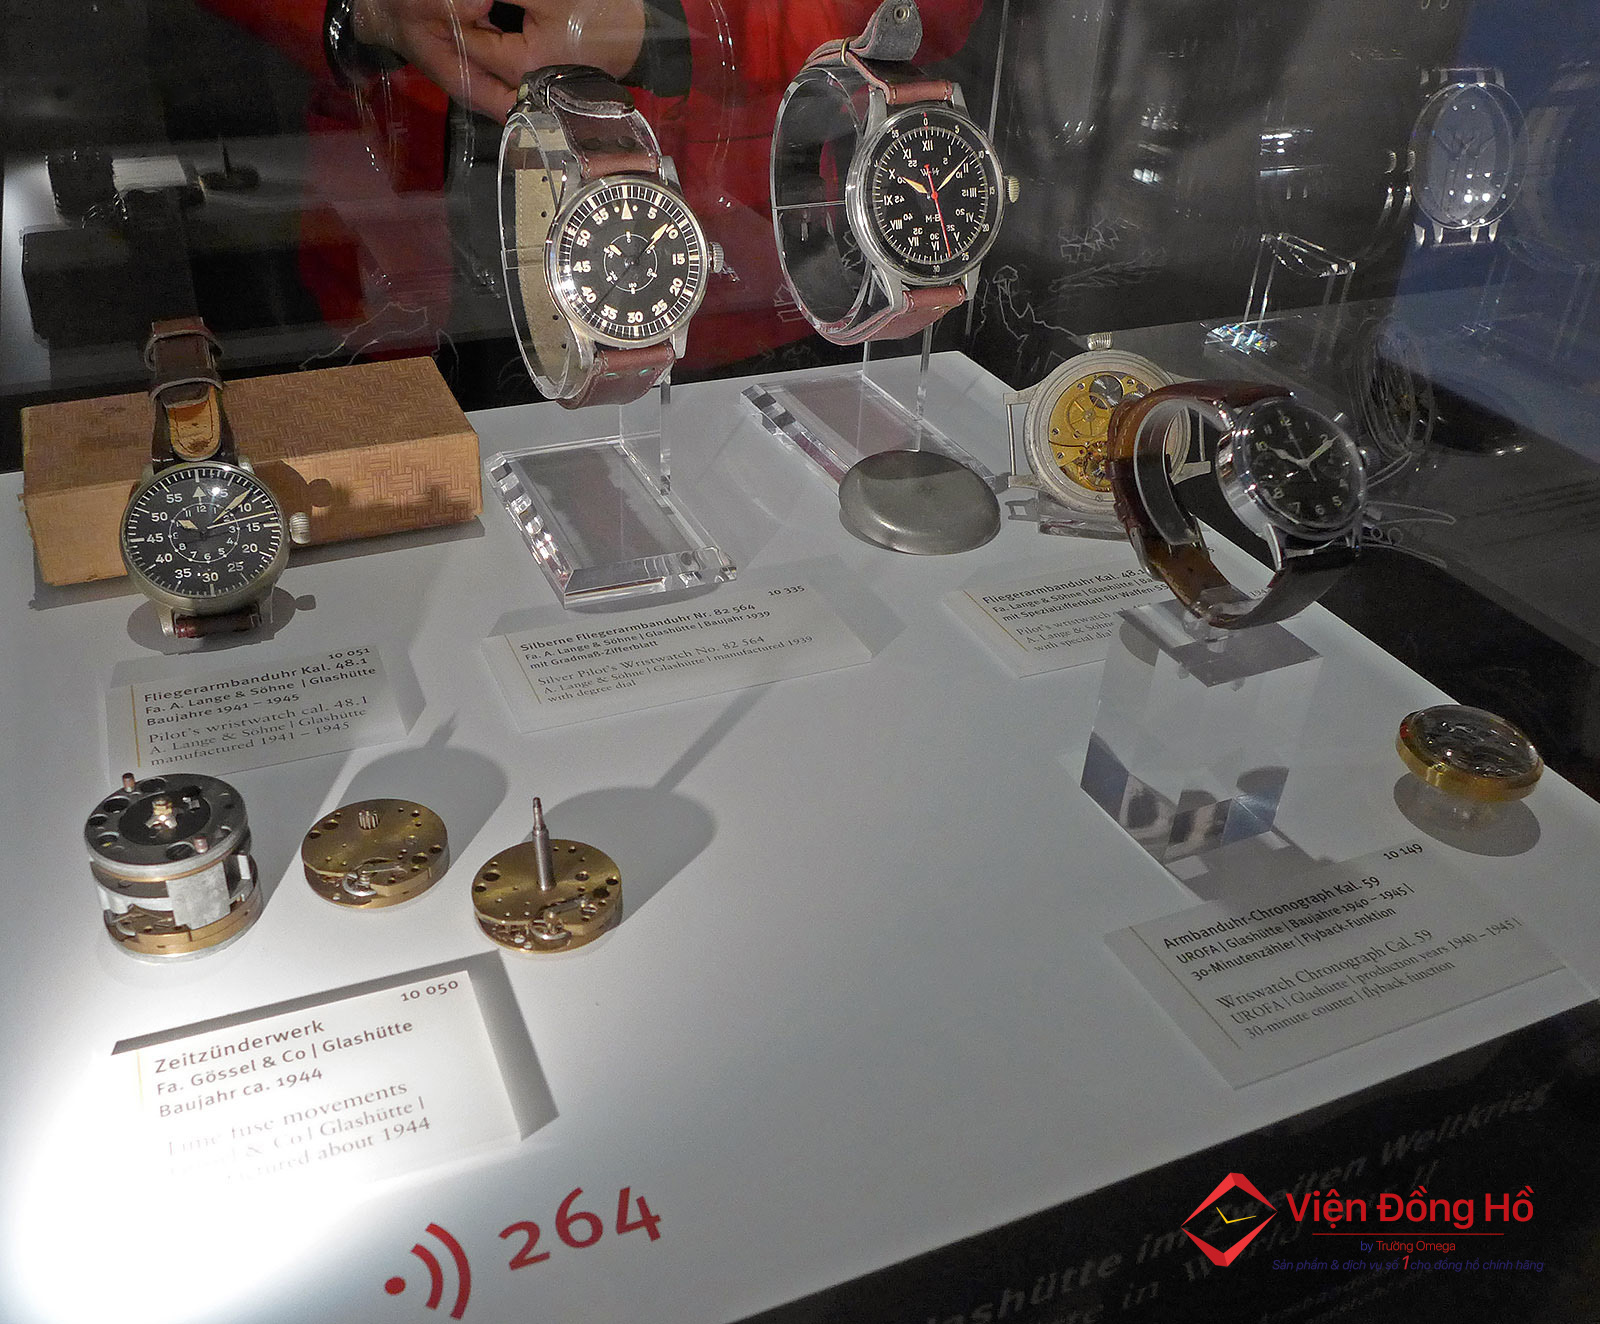 German Watch Museum - Tham quan bao tang dong ho Duc 10